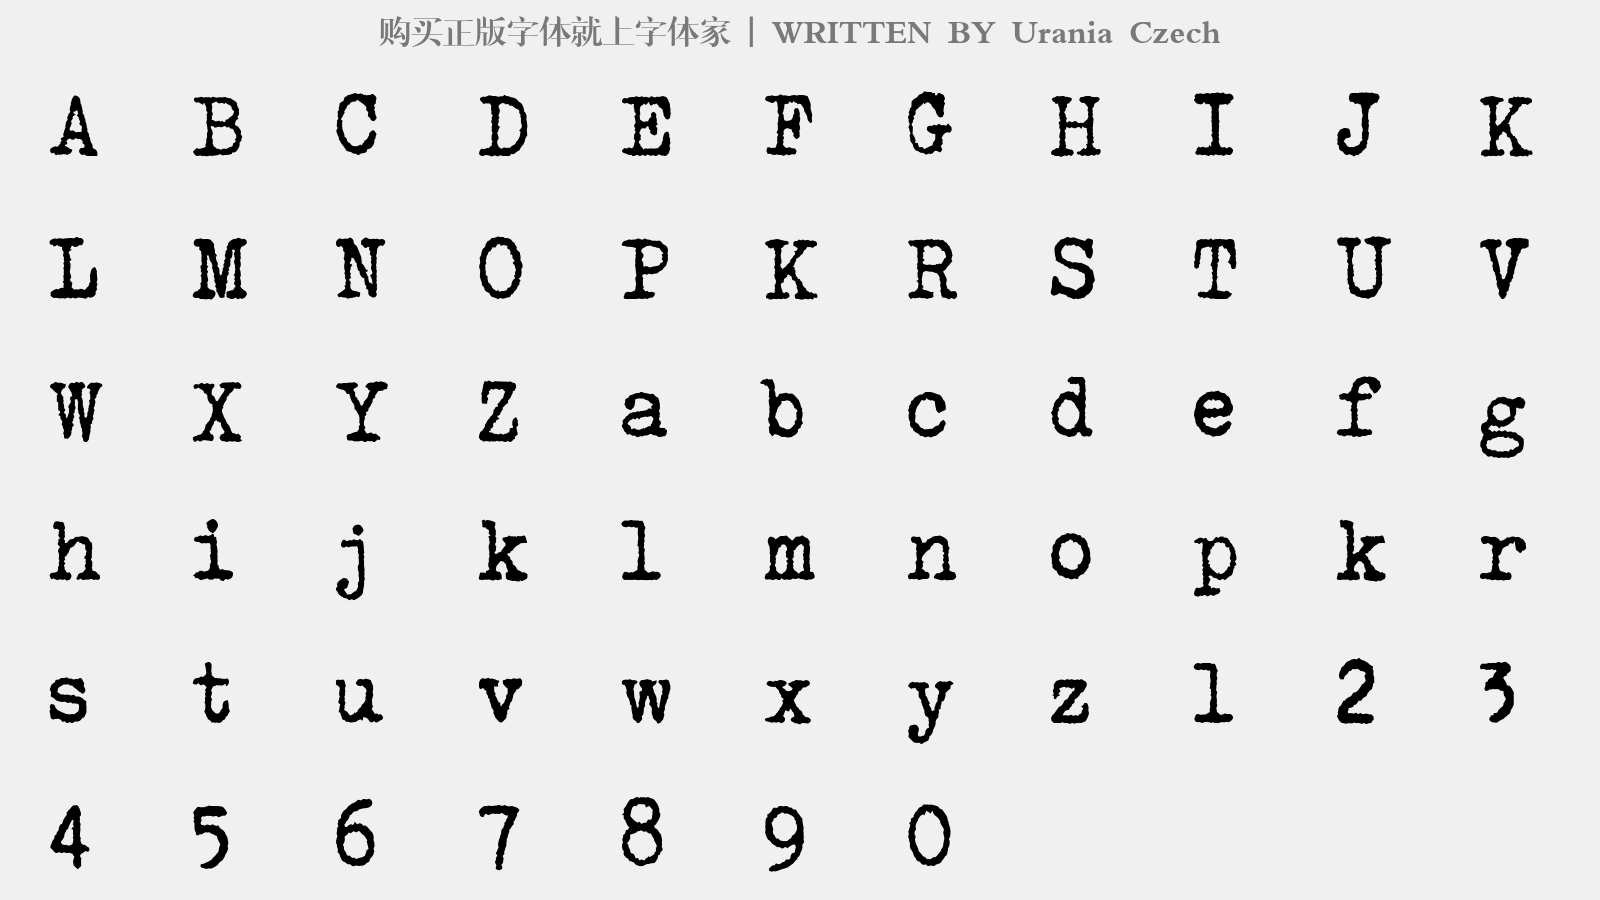 Urania Czech - 大写字母/小写字母/数字